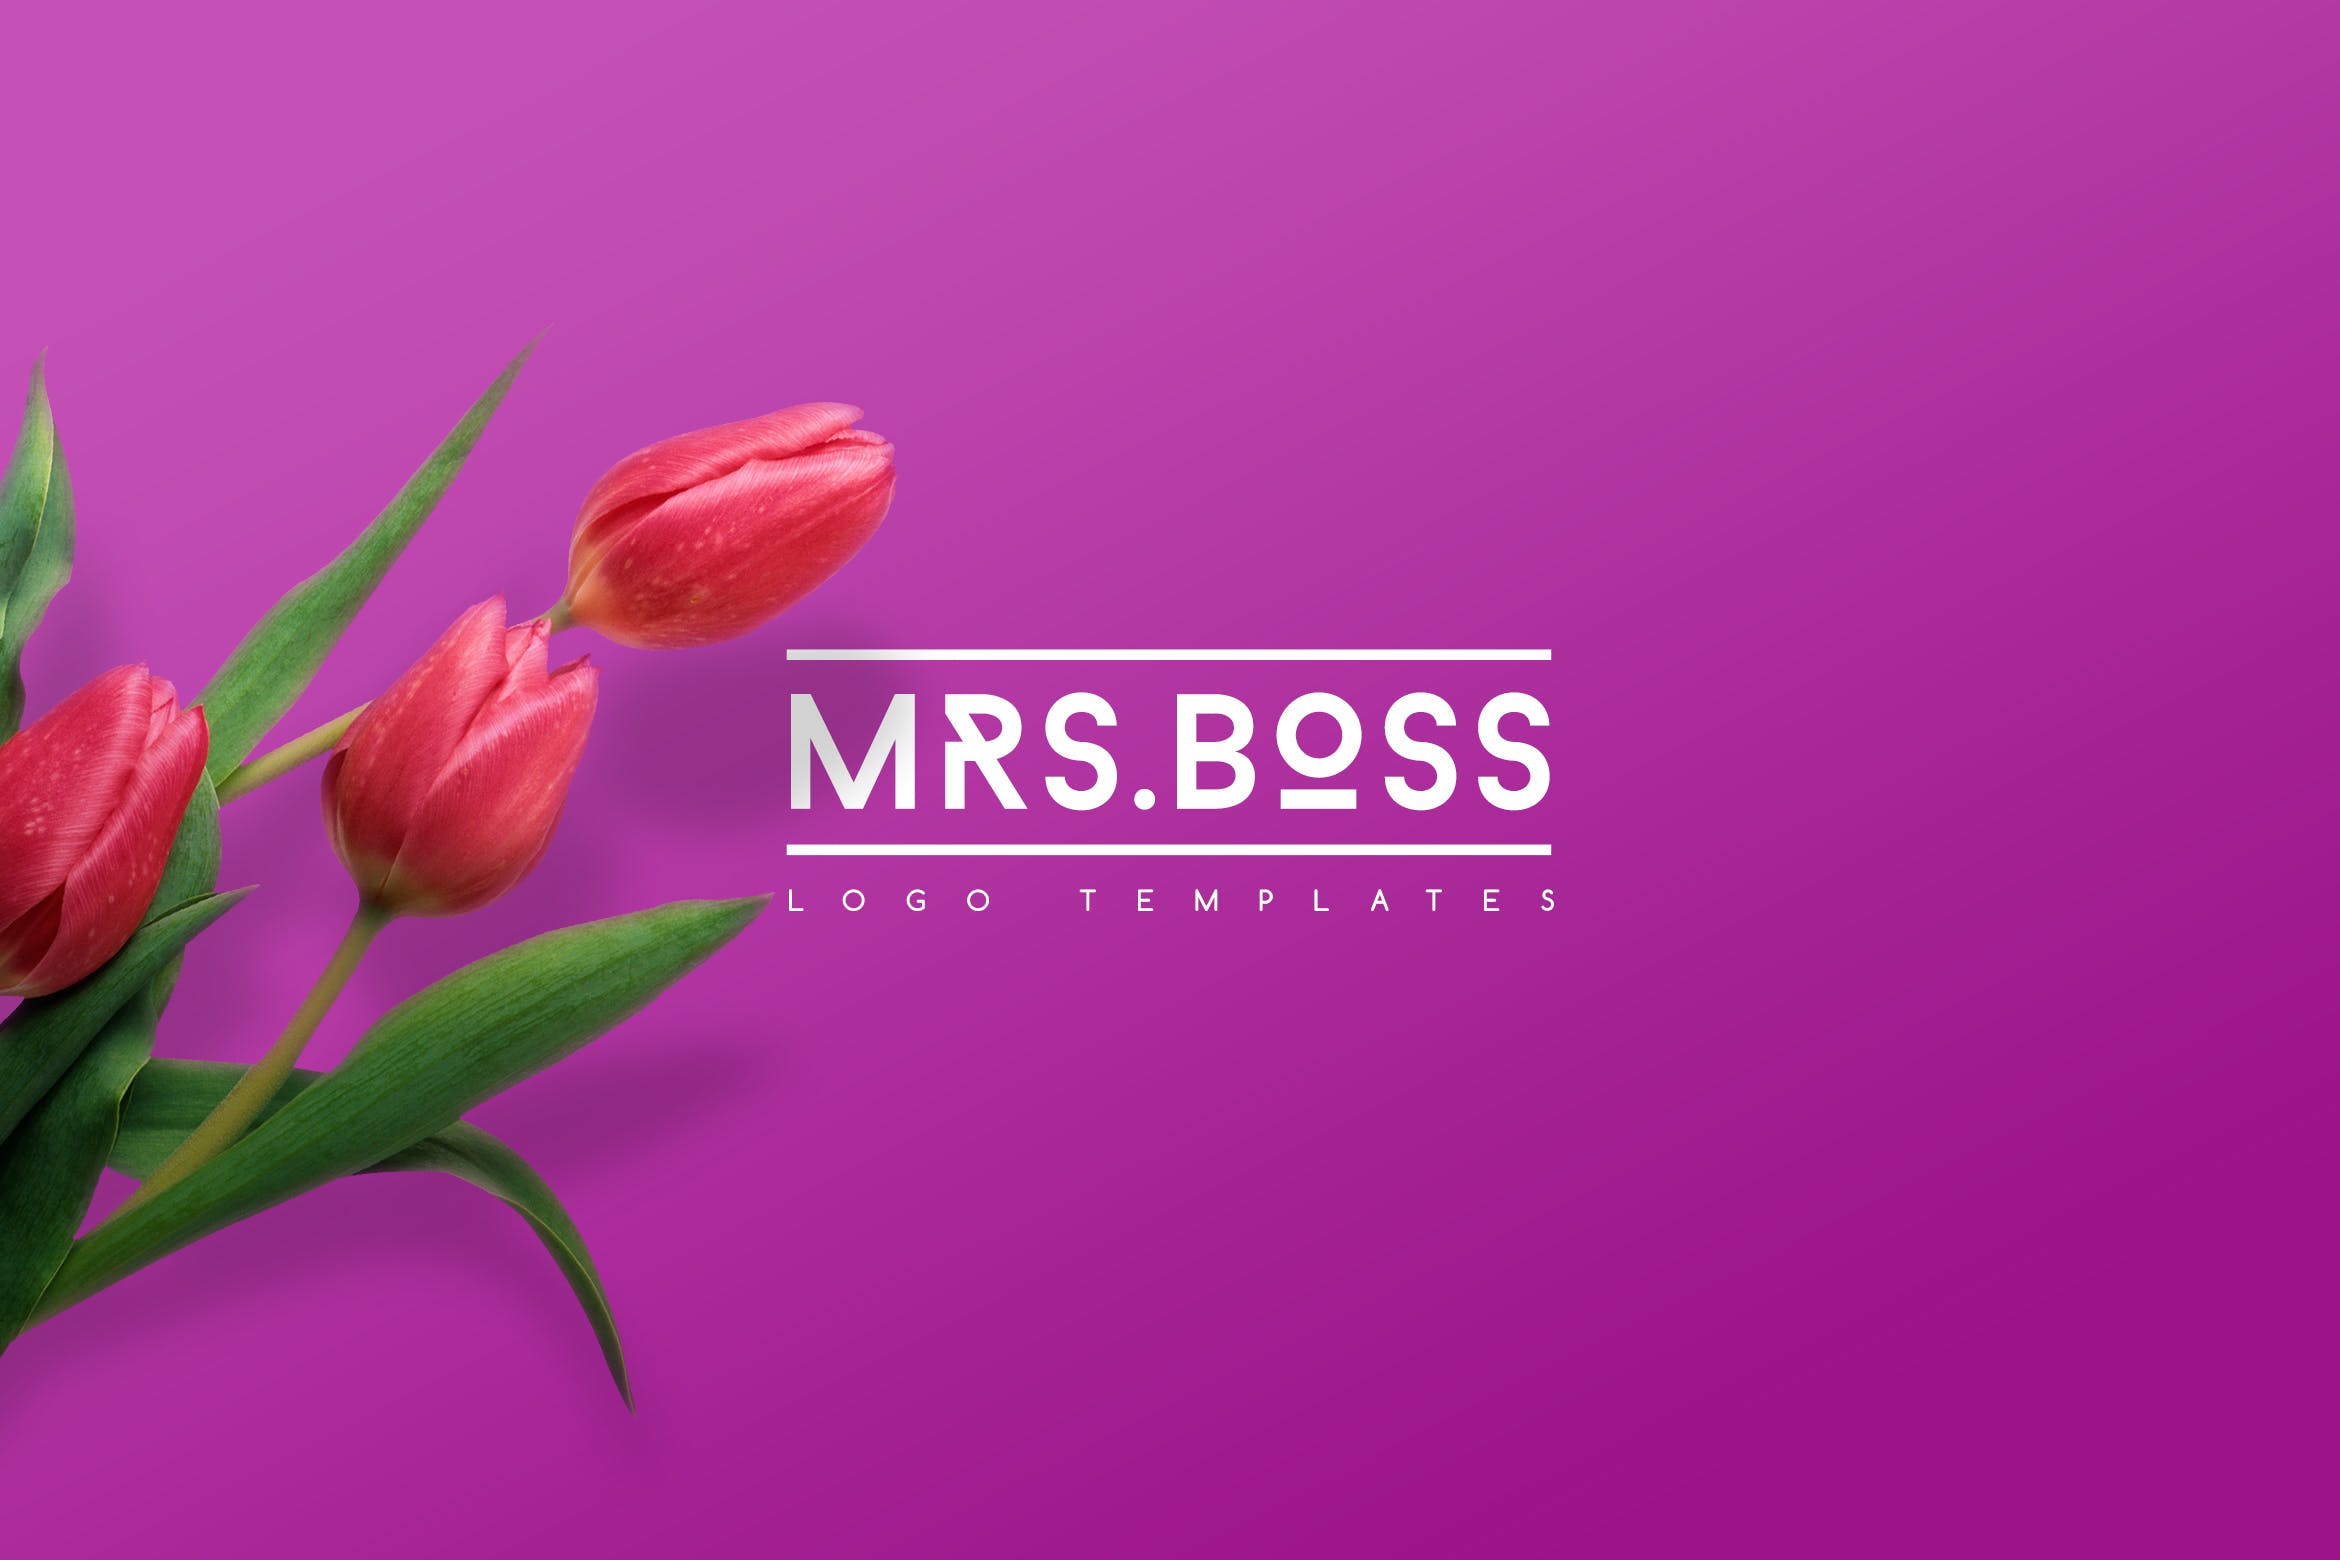 女性时尚主题创意Logo设计模板 Mrs.Boss Logo Templates插图